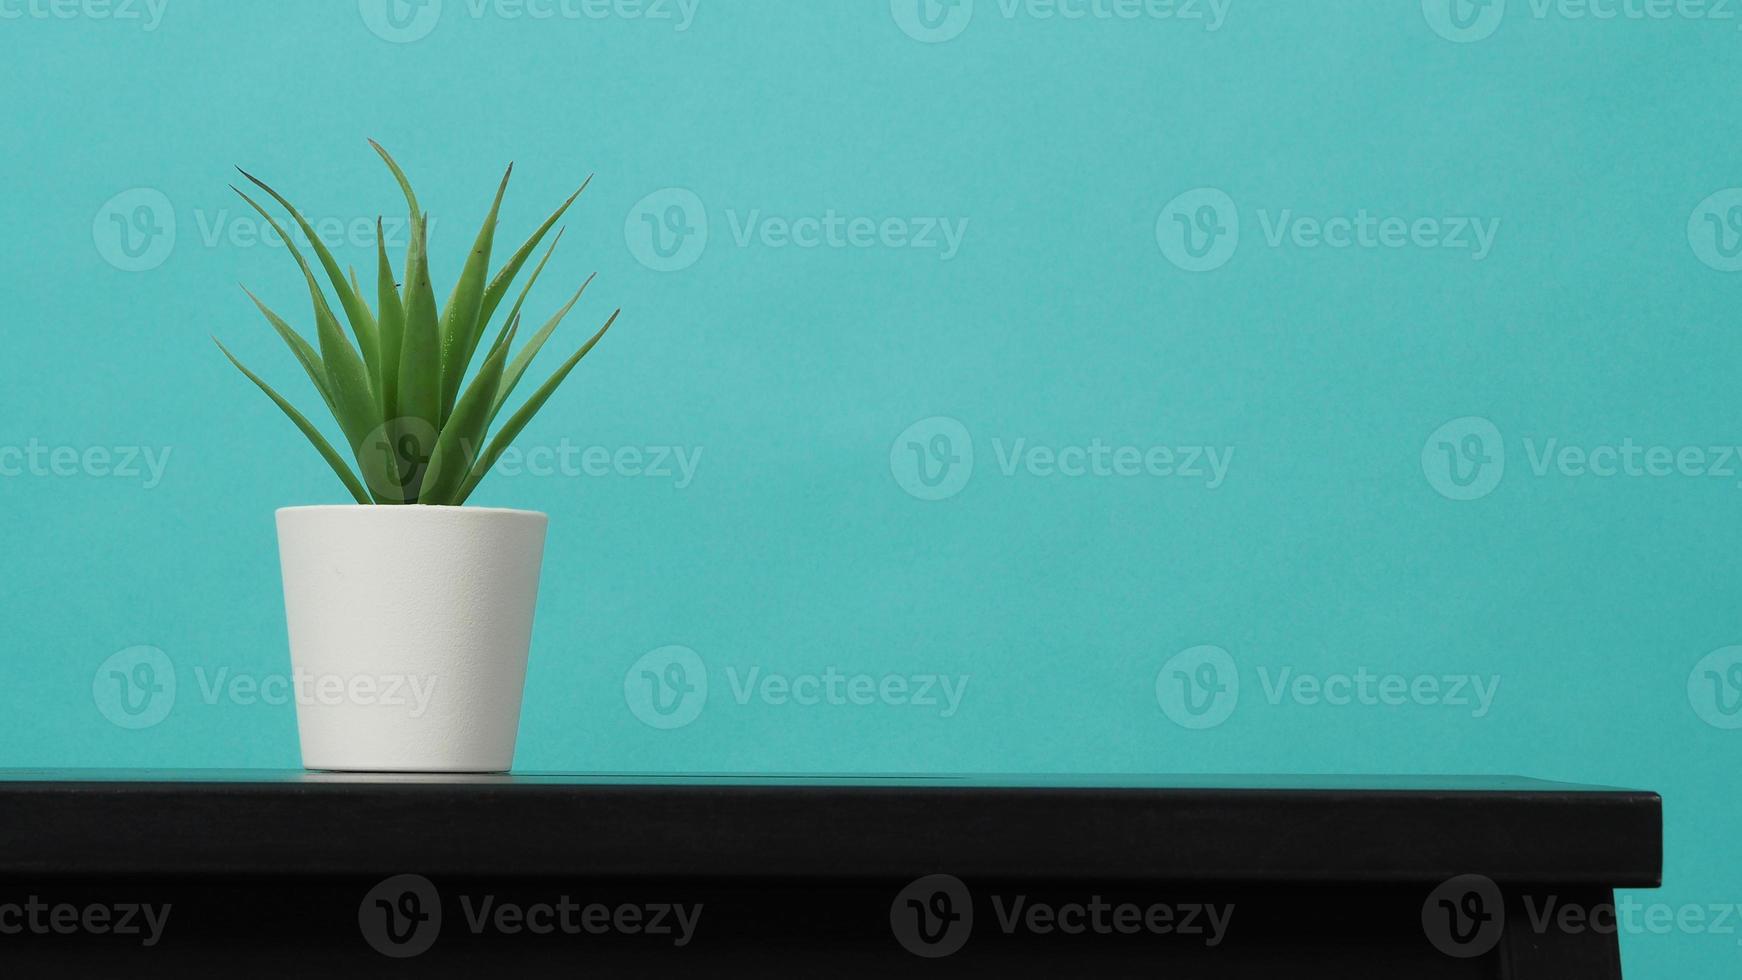 pianta di cactus artificiale sulla scrivania con sfondo verde menta foto